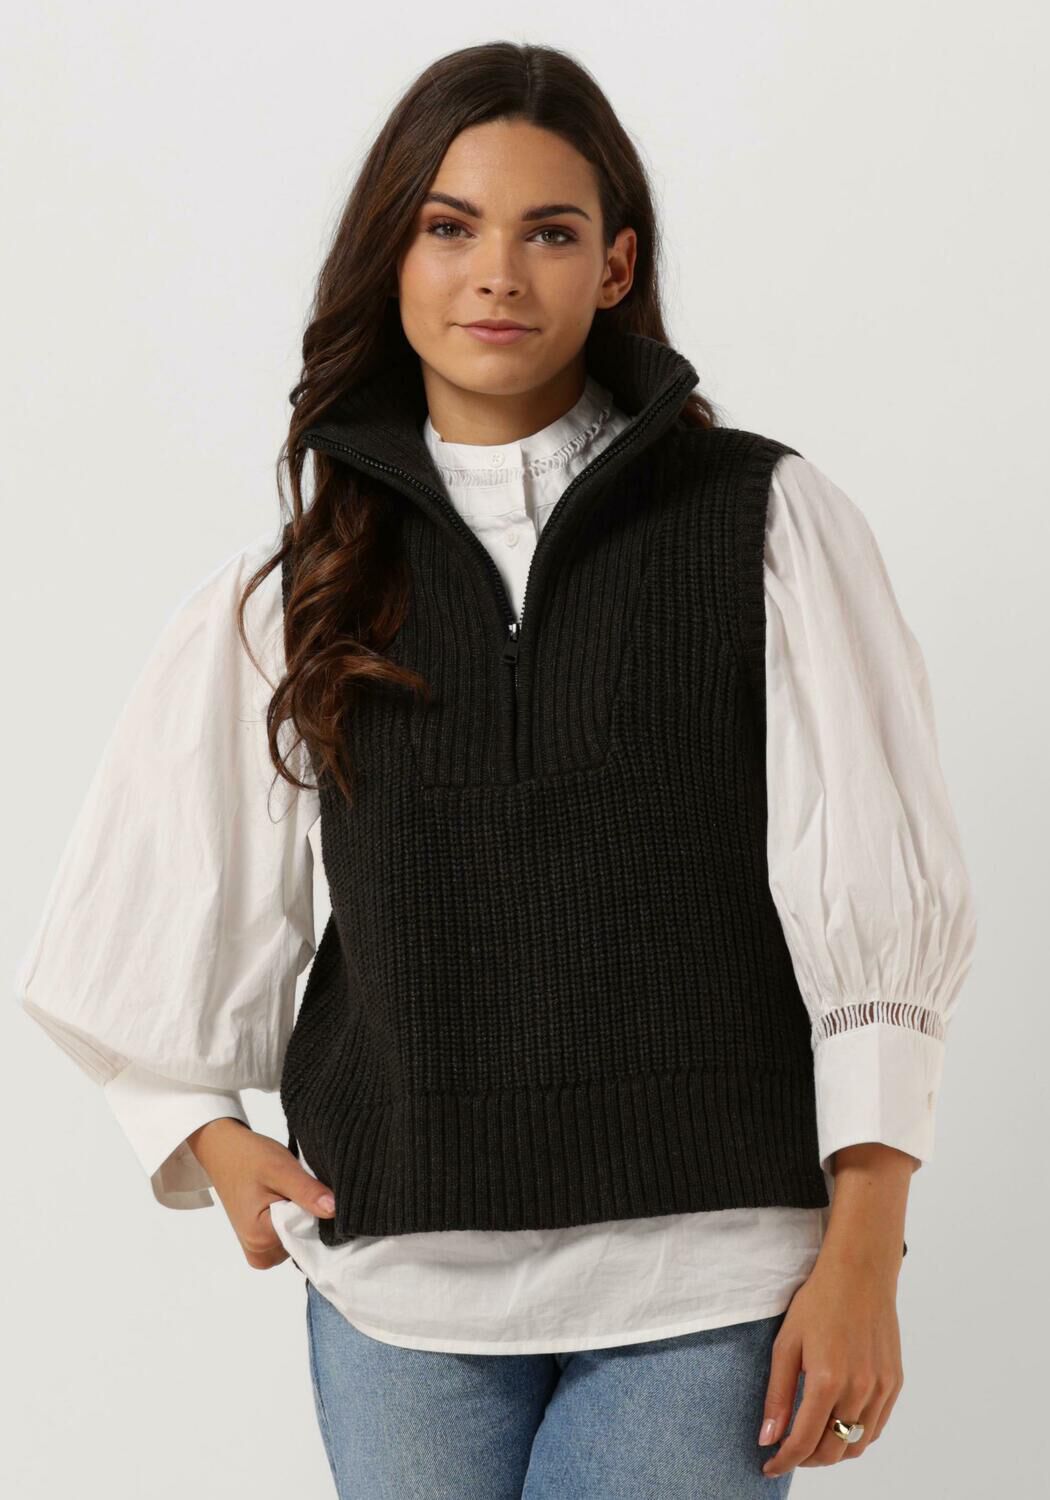 Kleding Dameskleding Sweaters Spencers Vest gemaakt van natuurlijke merinowol Blauwe Trui-Vest-V hals Trui-Vest 